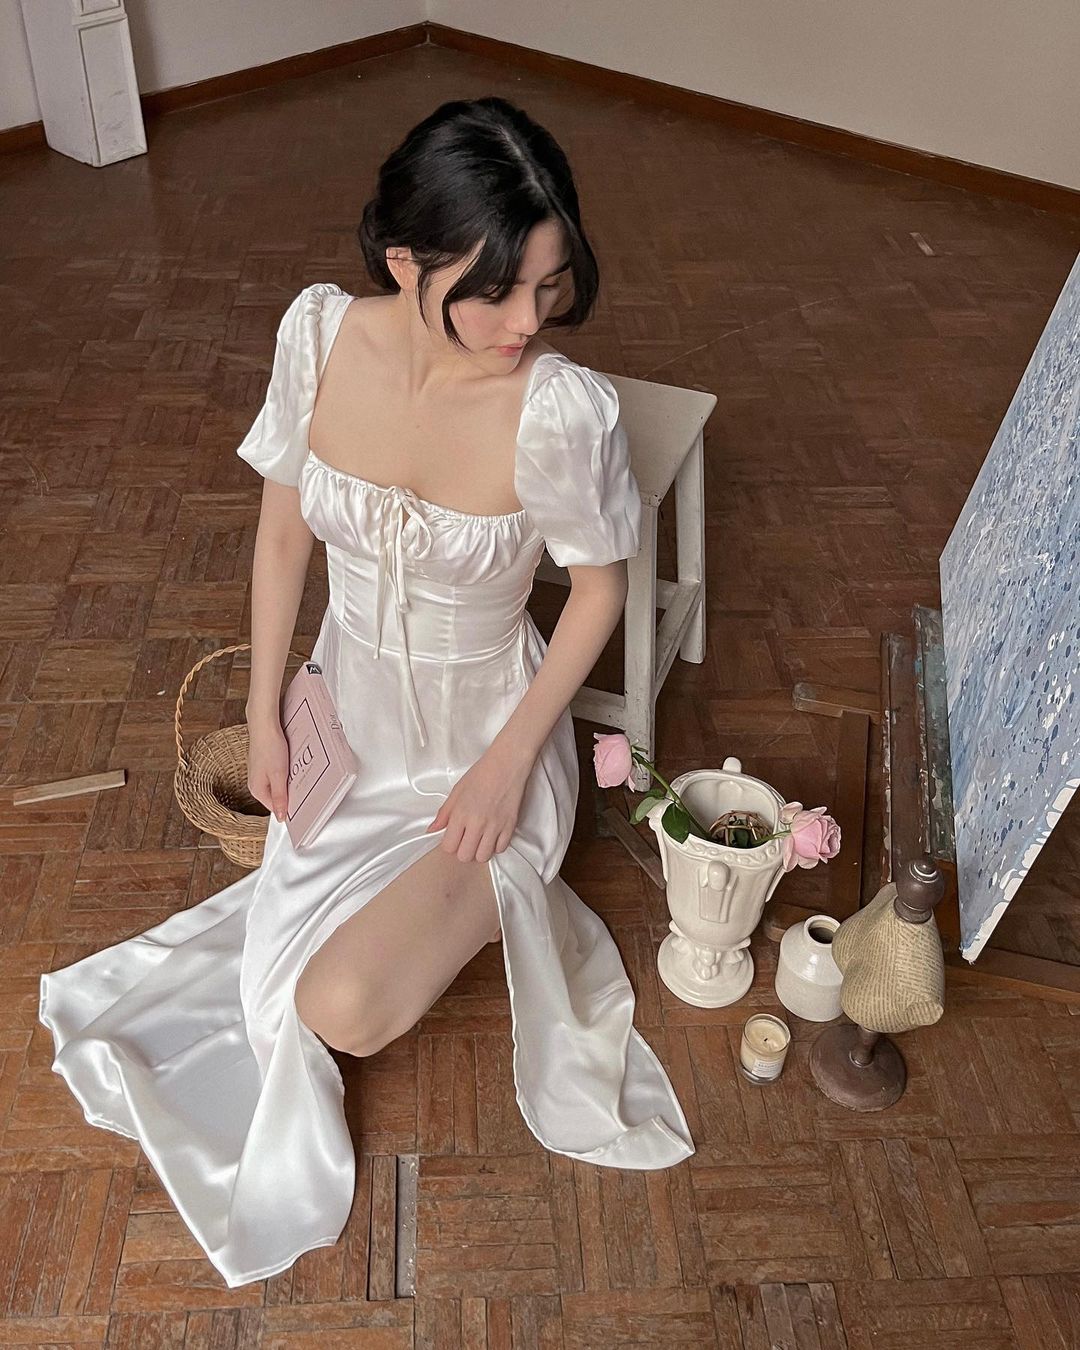 穿著 the.lookbook.select Adella 洋裝的女士坐在畫架旁邊，木地板上擺著美術用品。